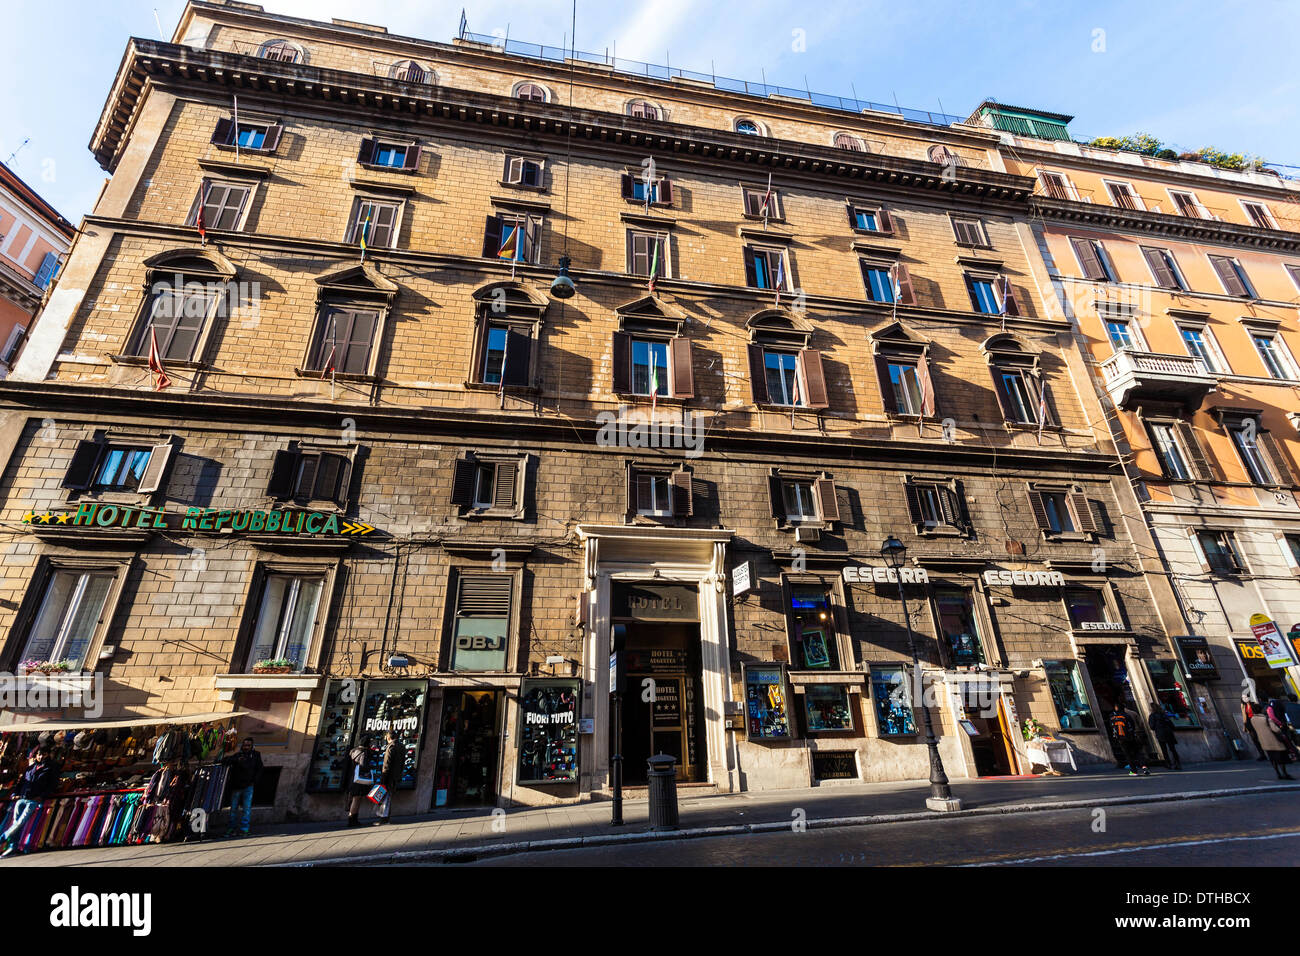 Hotel Republica, Rome, Italy Stock Photo